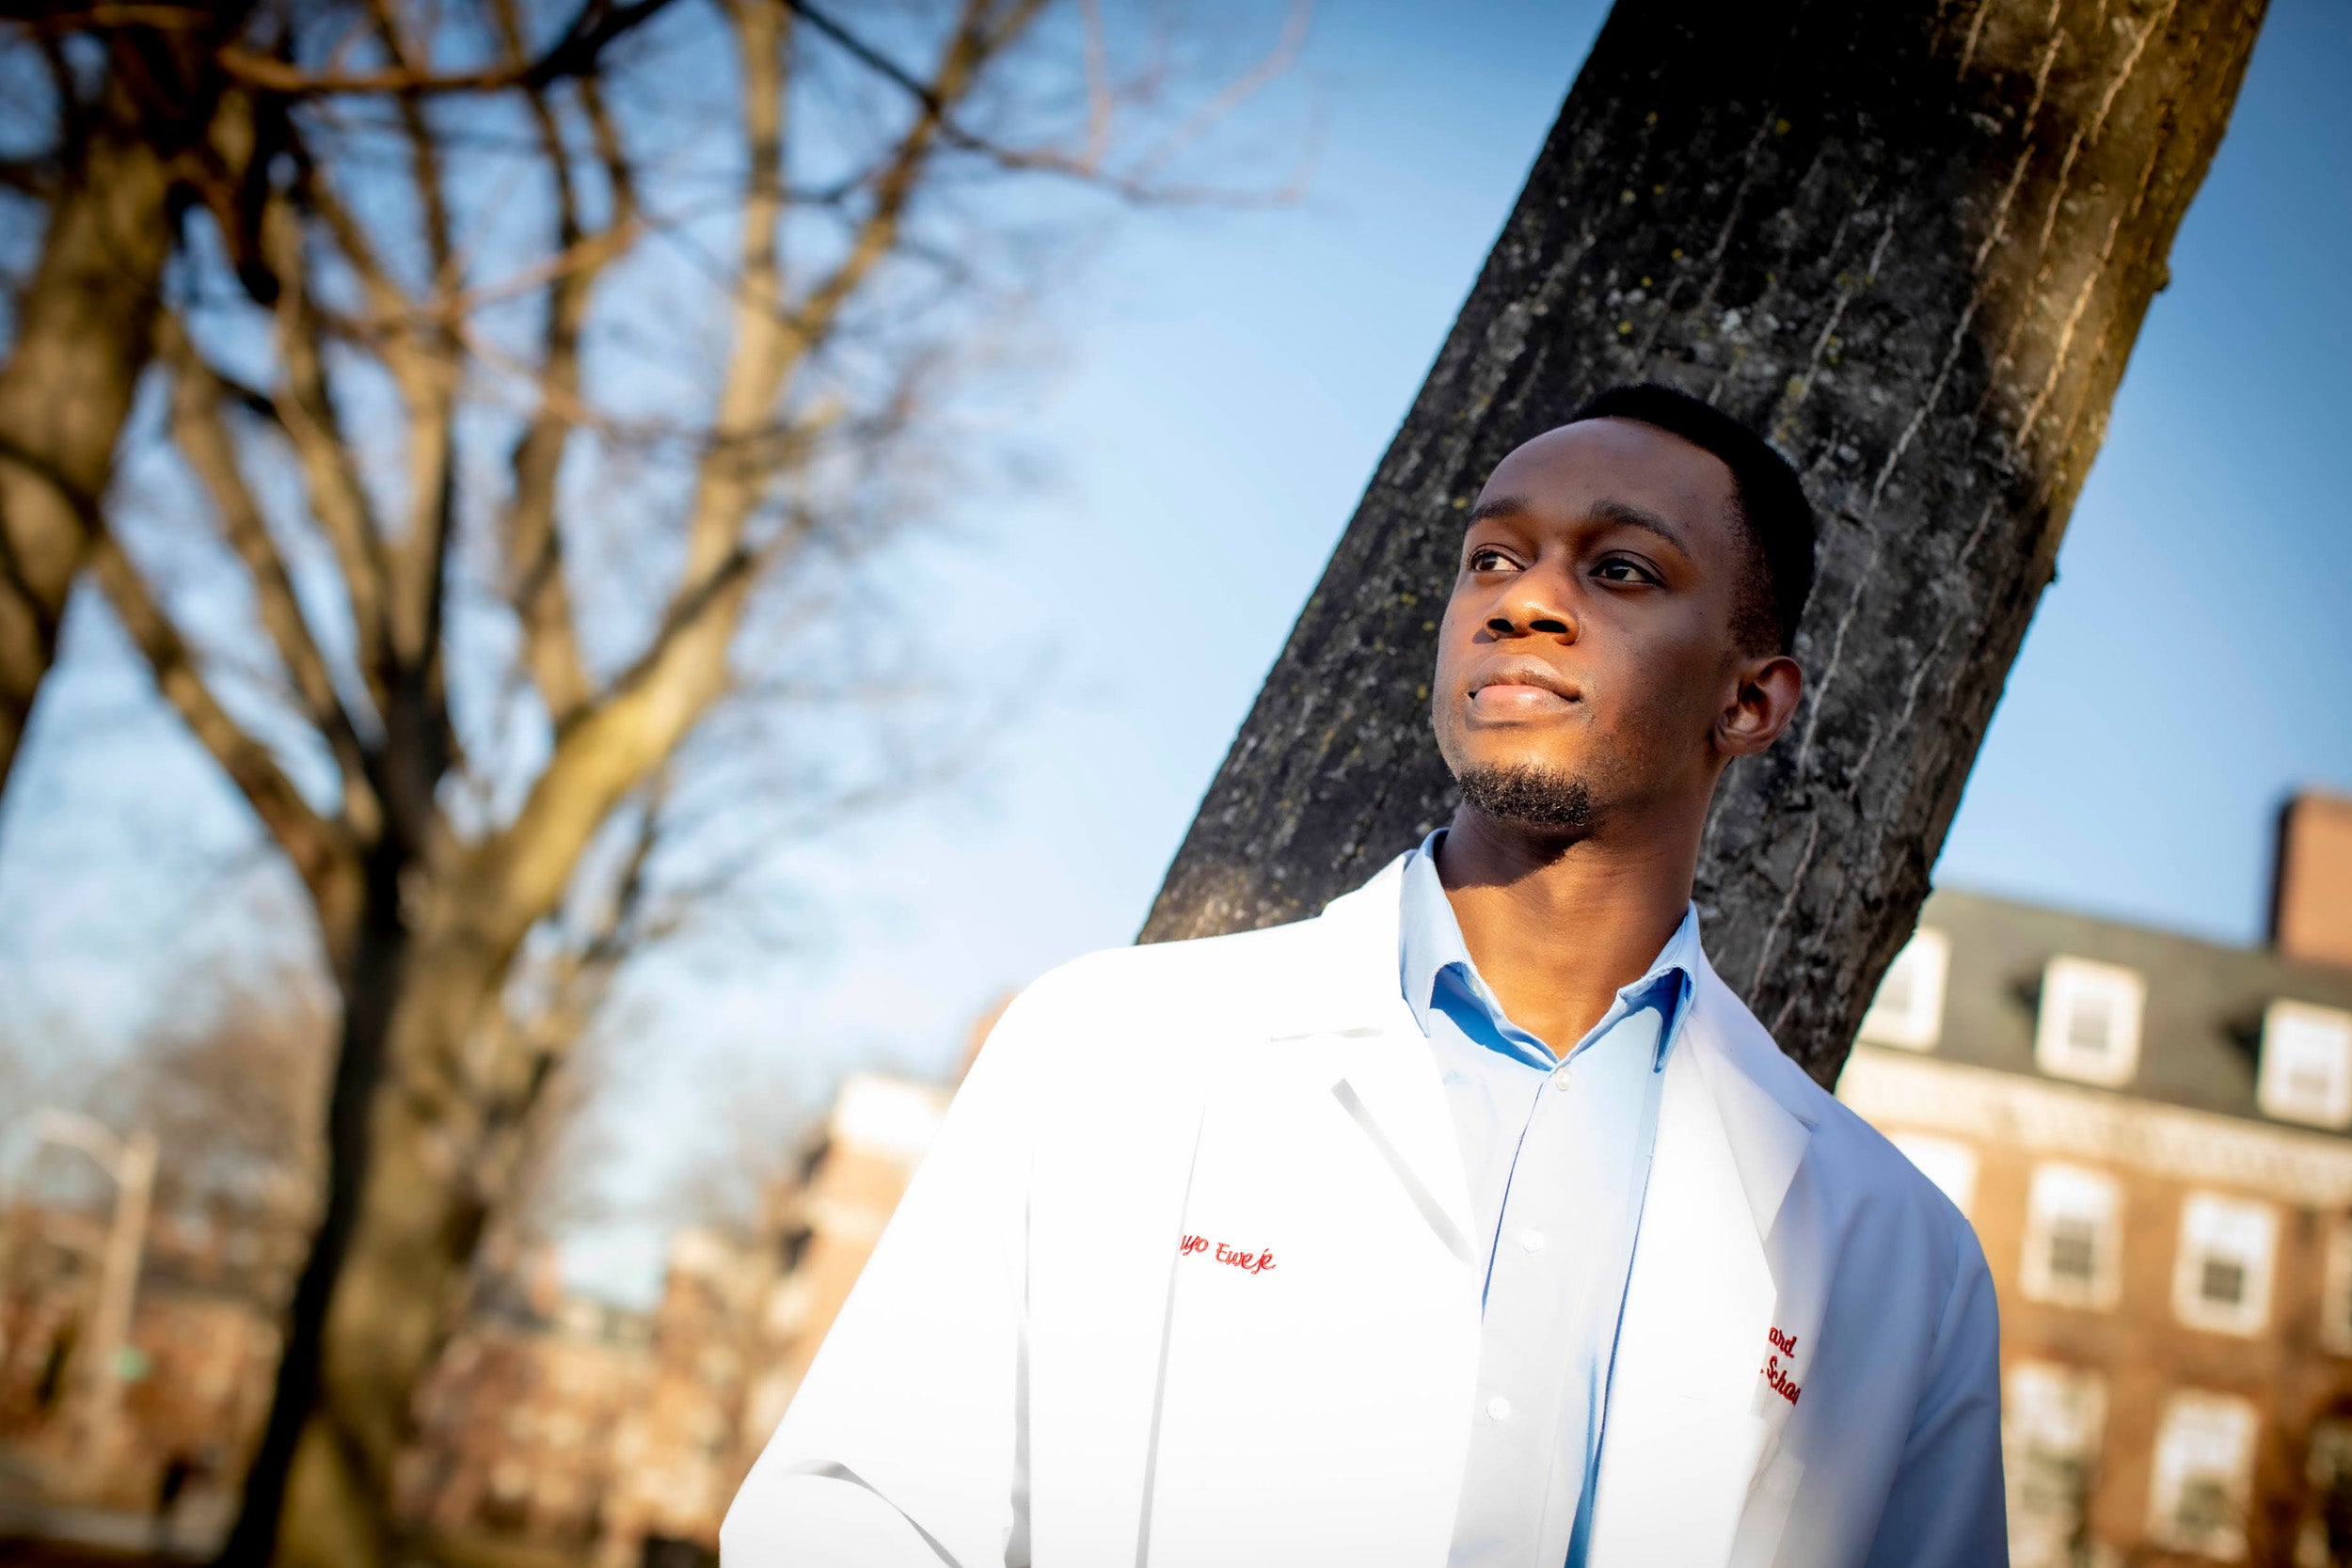 Harvard University Medical School student Feyisayo Eweje is pictured.